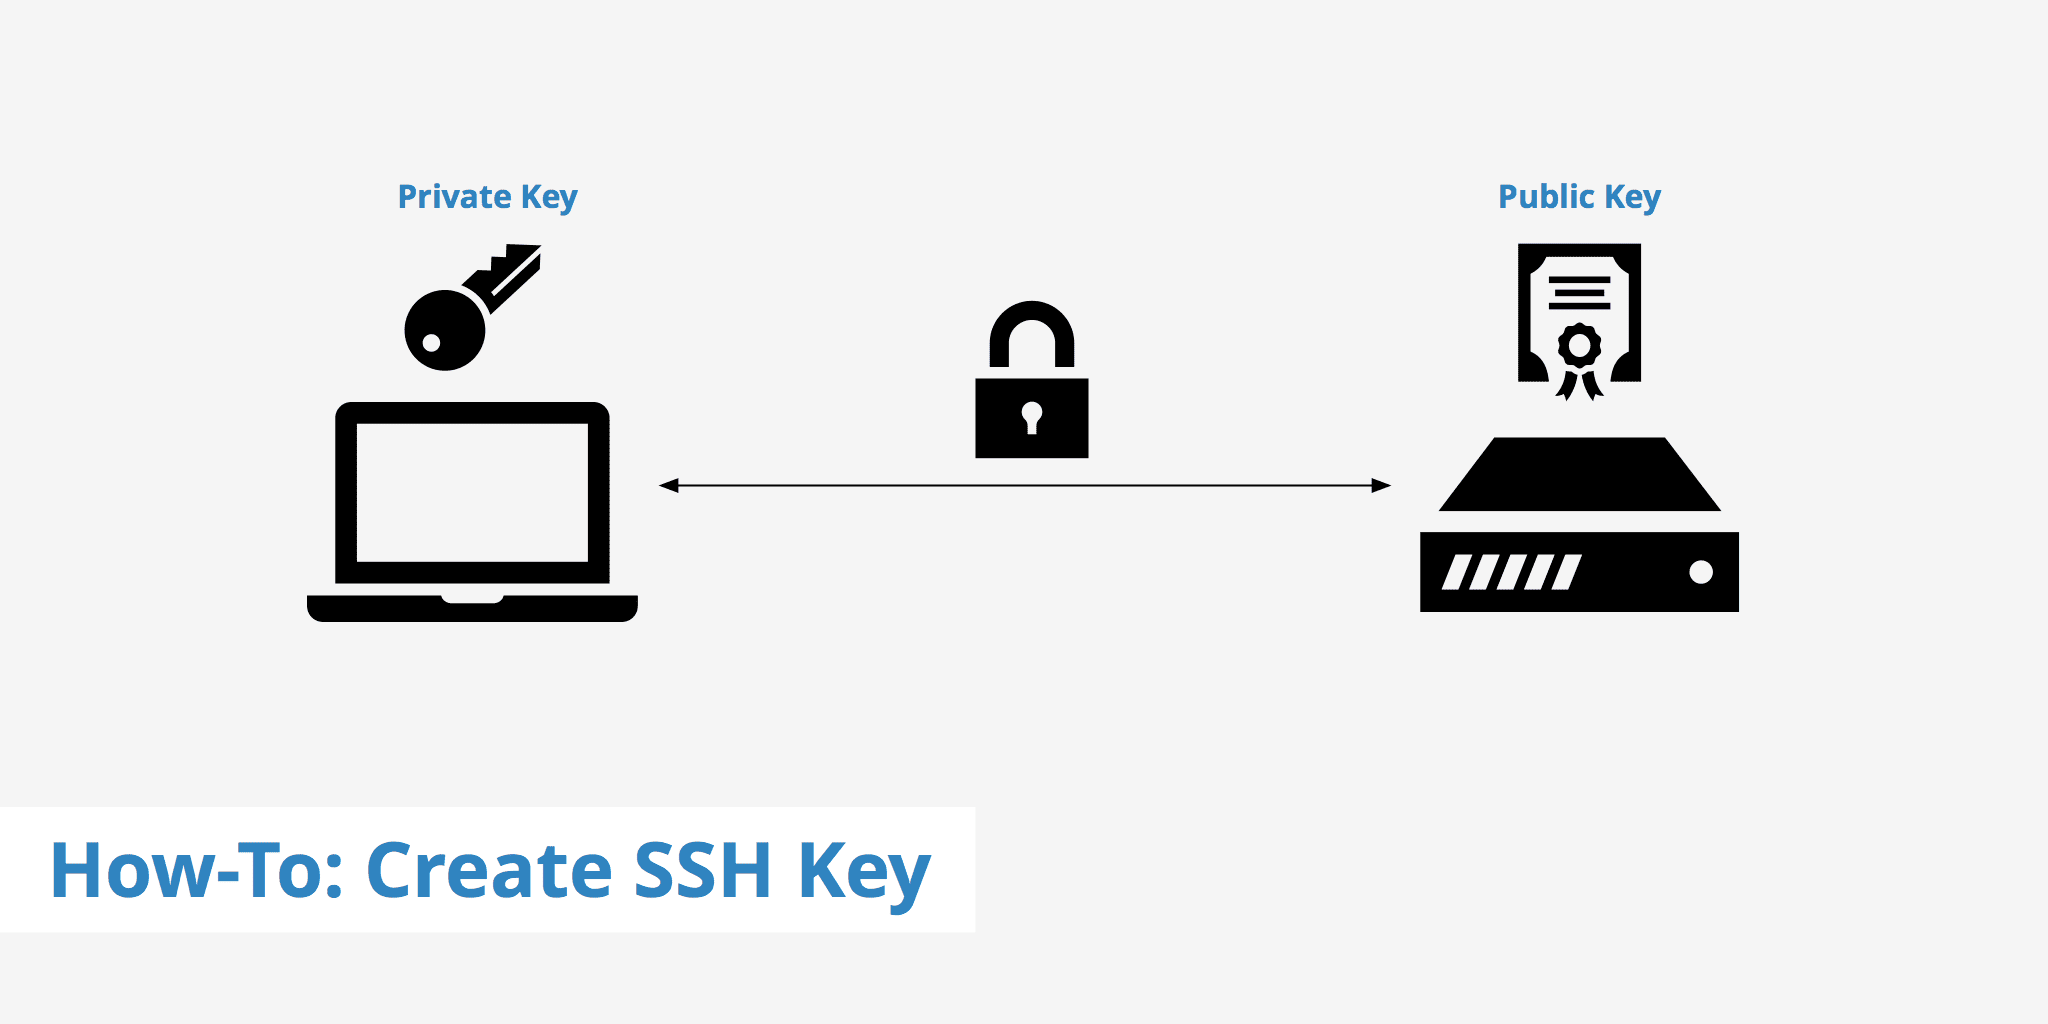 ssh key